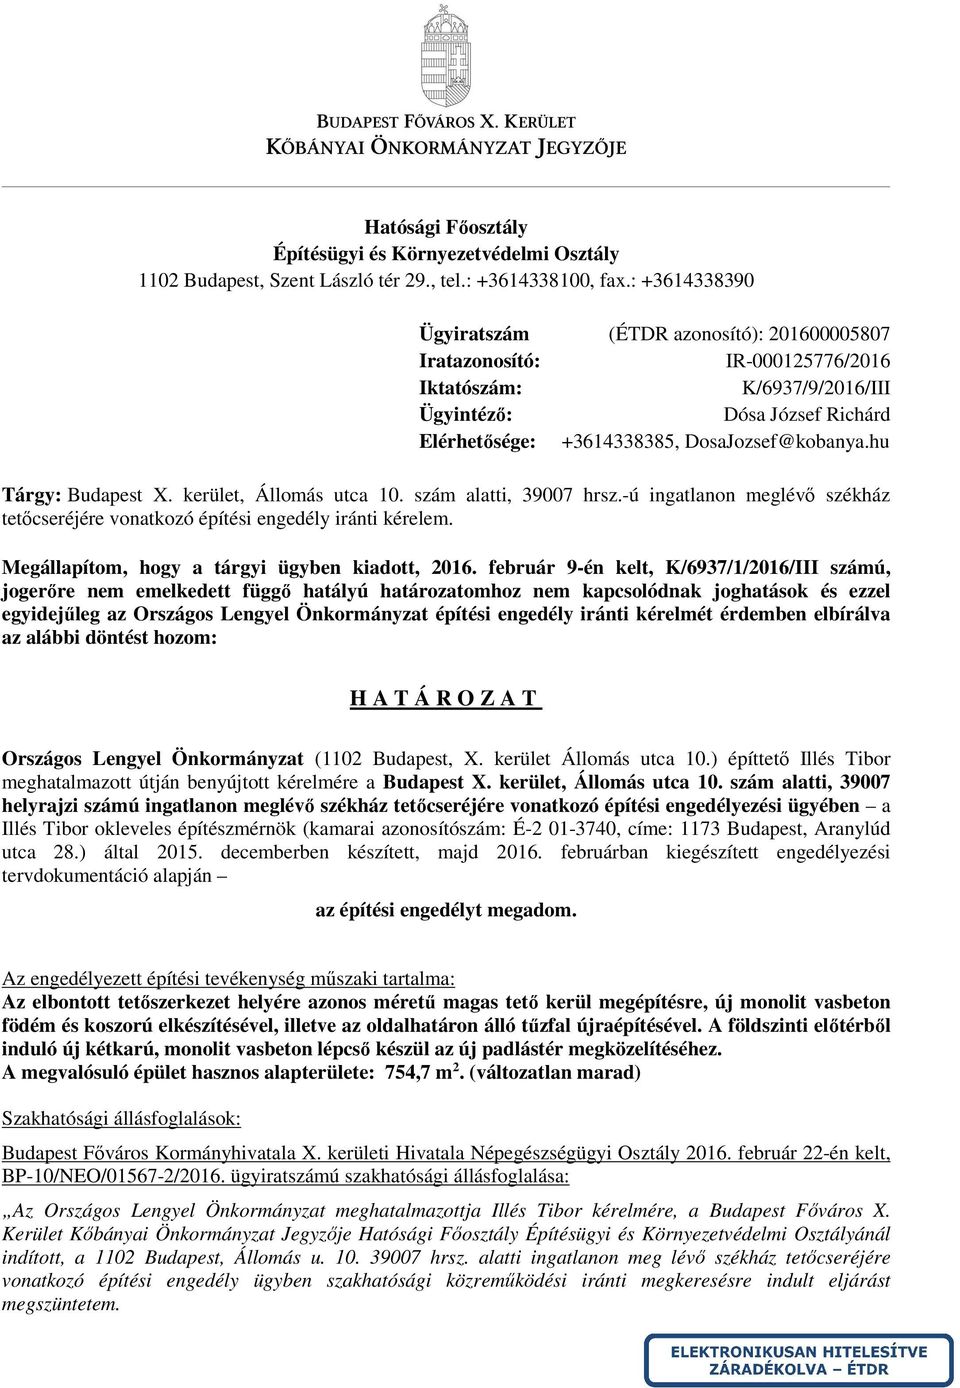 hu Tárgy: Budapest X. kerület, Állomás utca 10. szám alatti, 39007 hrsz.-ú ingatlanon meglévő székház tetőcseréjére vonatkozó építési engedély iránti kérelem.